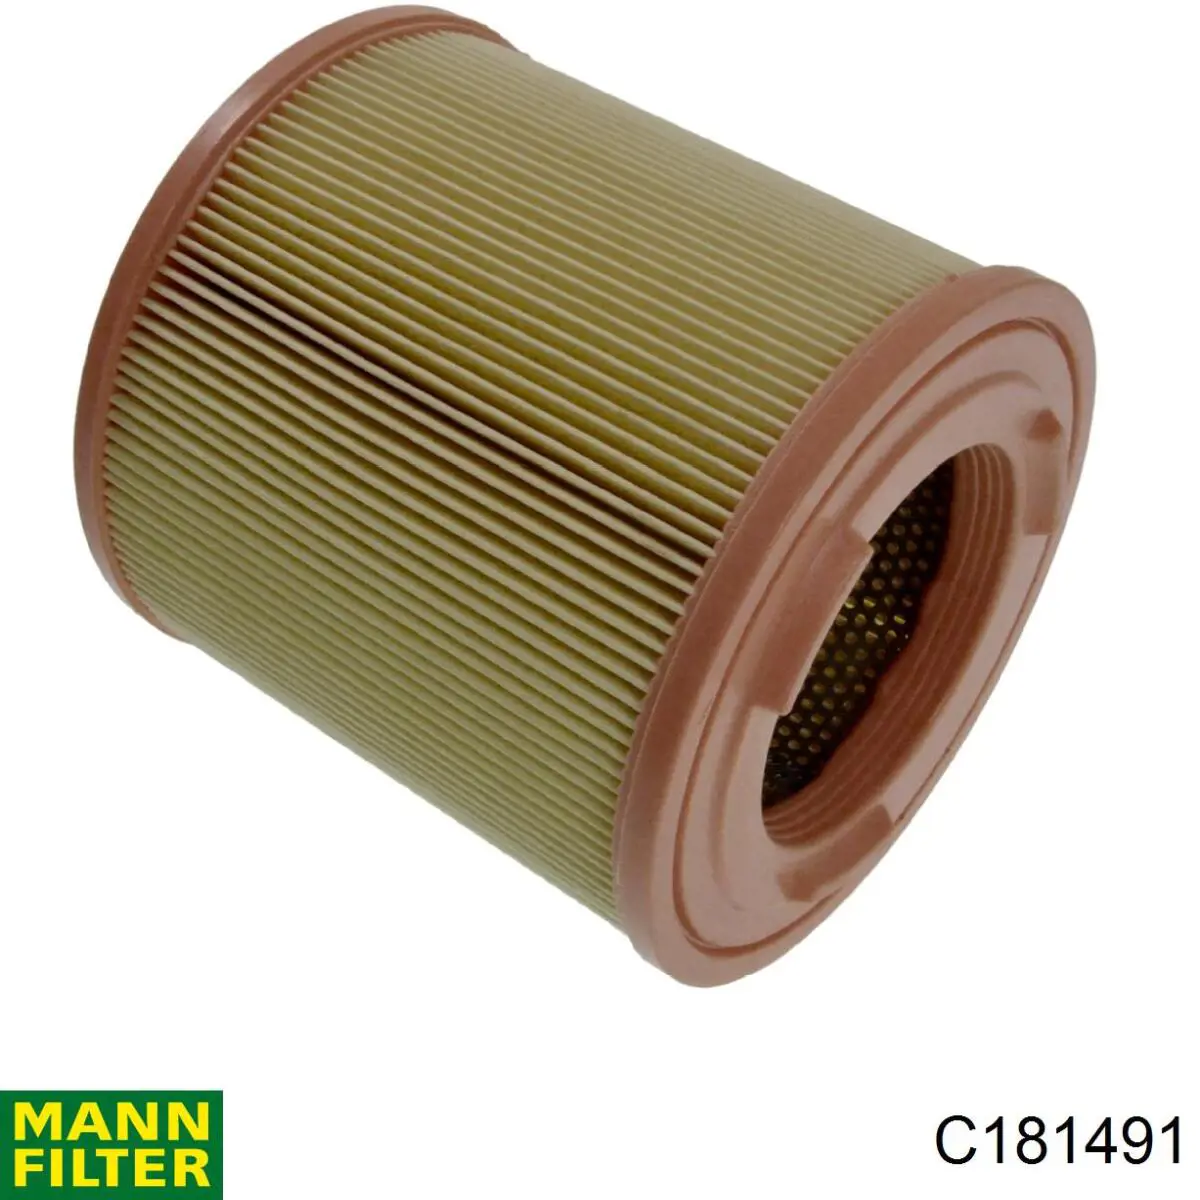 Filtro de aire C181491 Mann-Filter